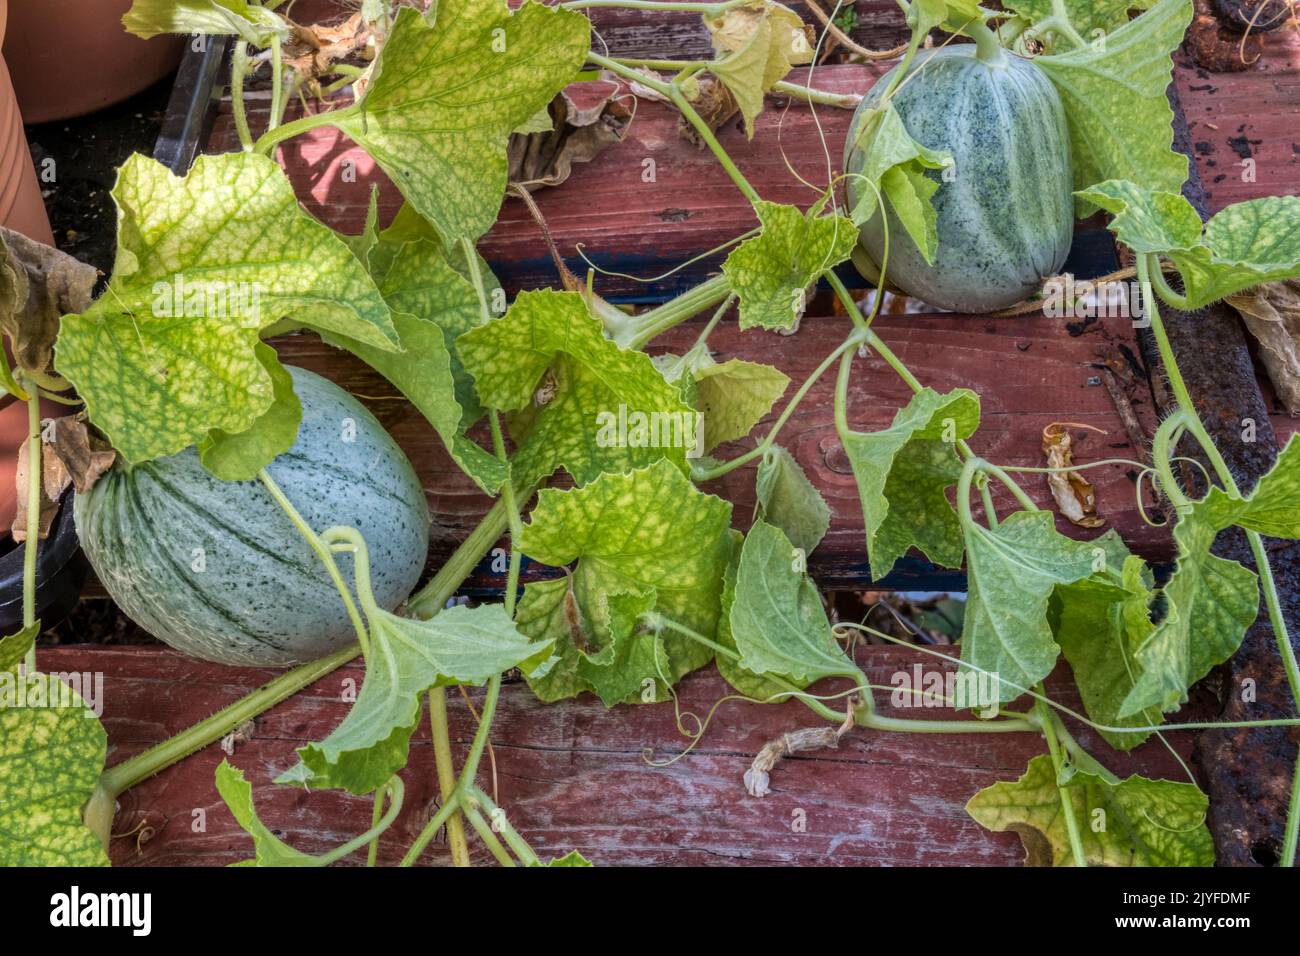 Meloni di Emir F1, Cucumis melo, che crescono su una mensola in una serra. Foto Stock